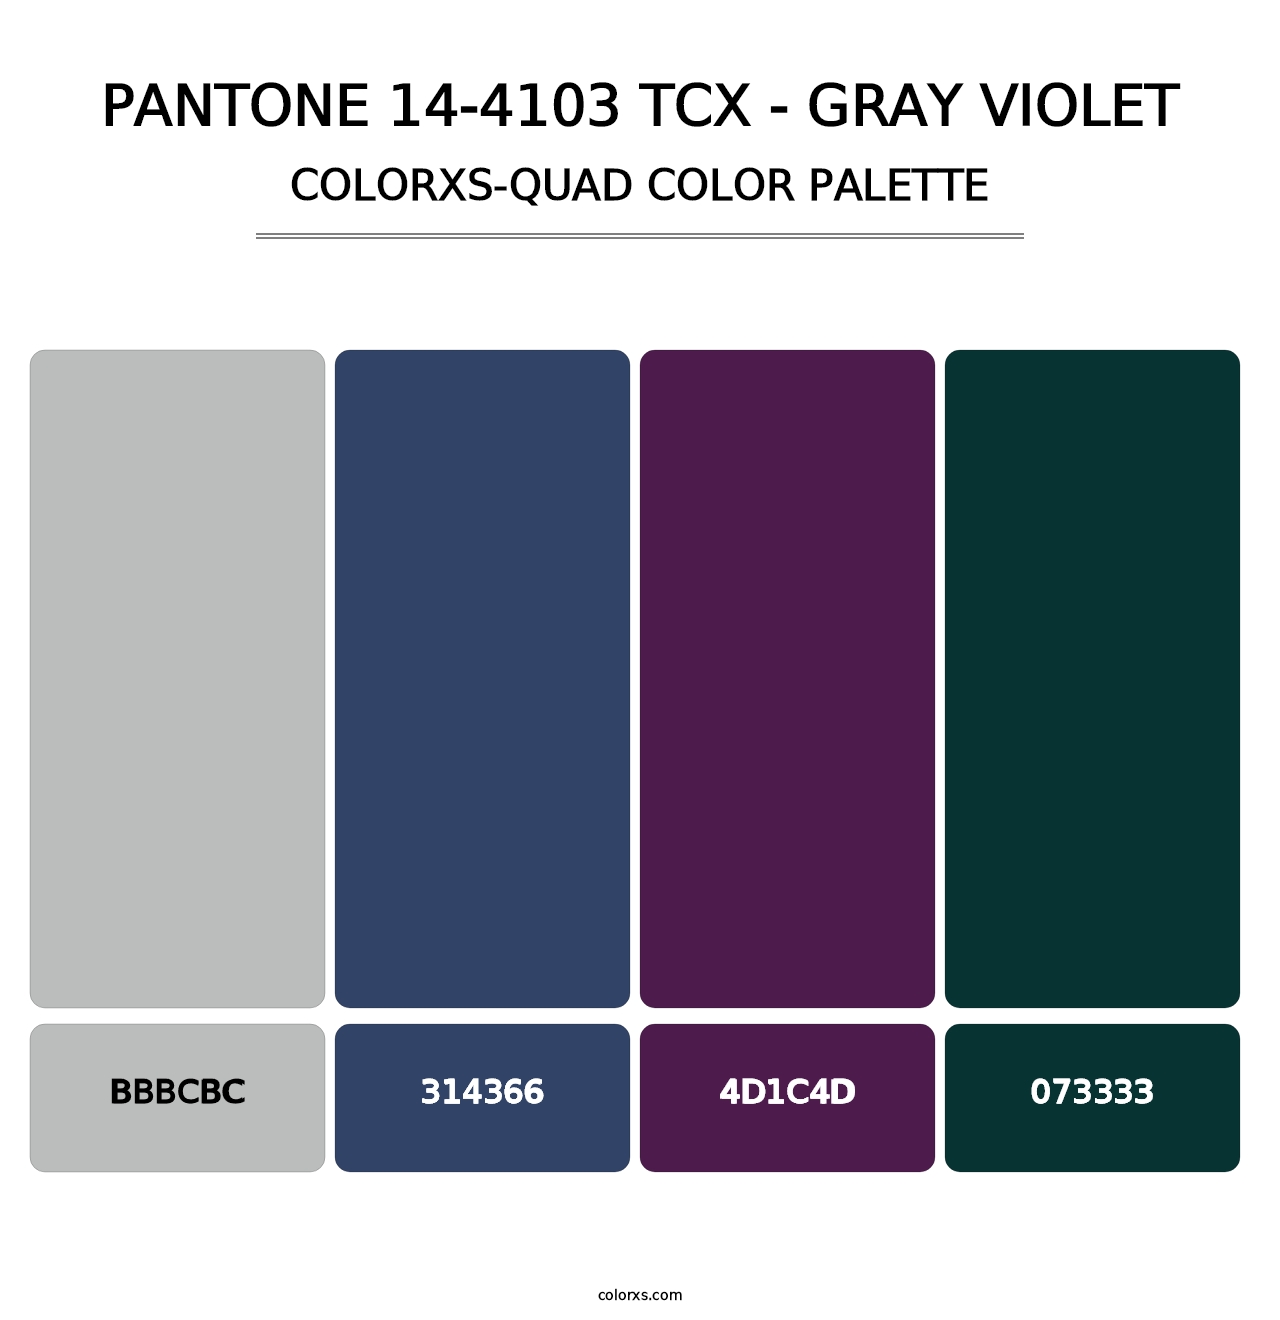 PANTONE 14-4103 TCX - Gray Violet - Colorxs Quad Palette